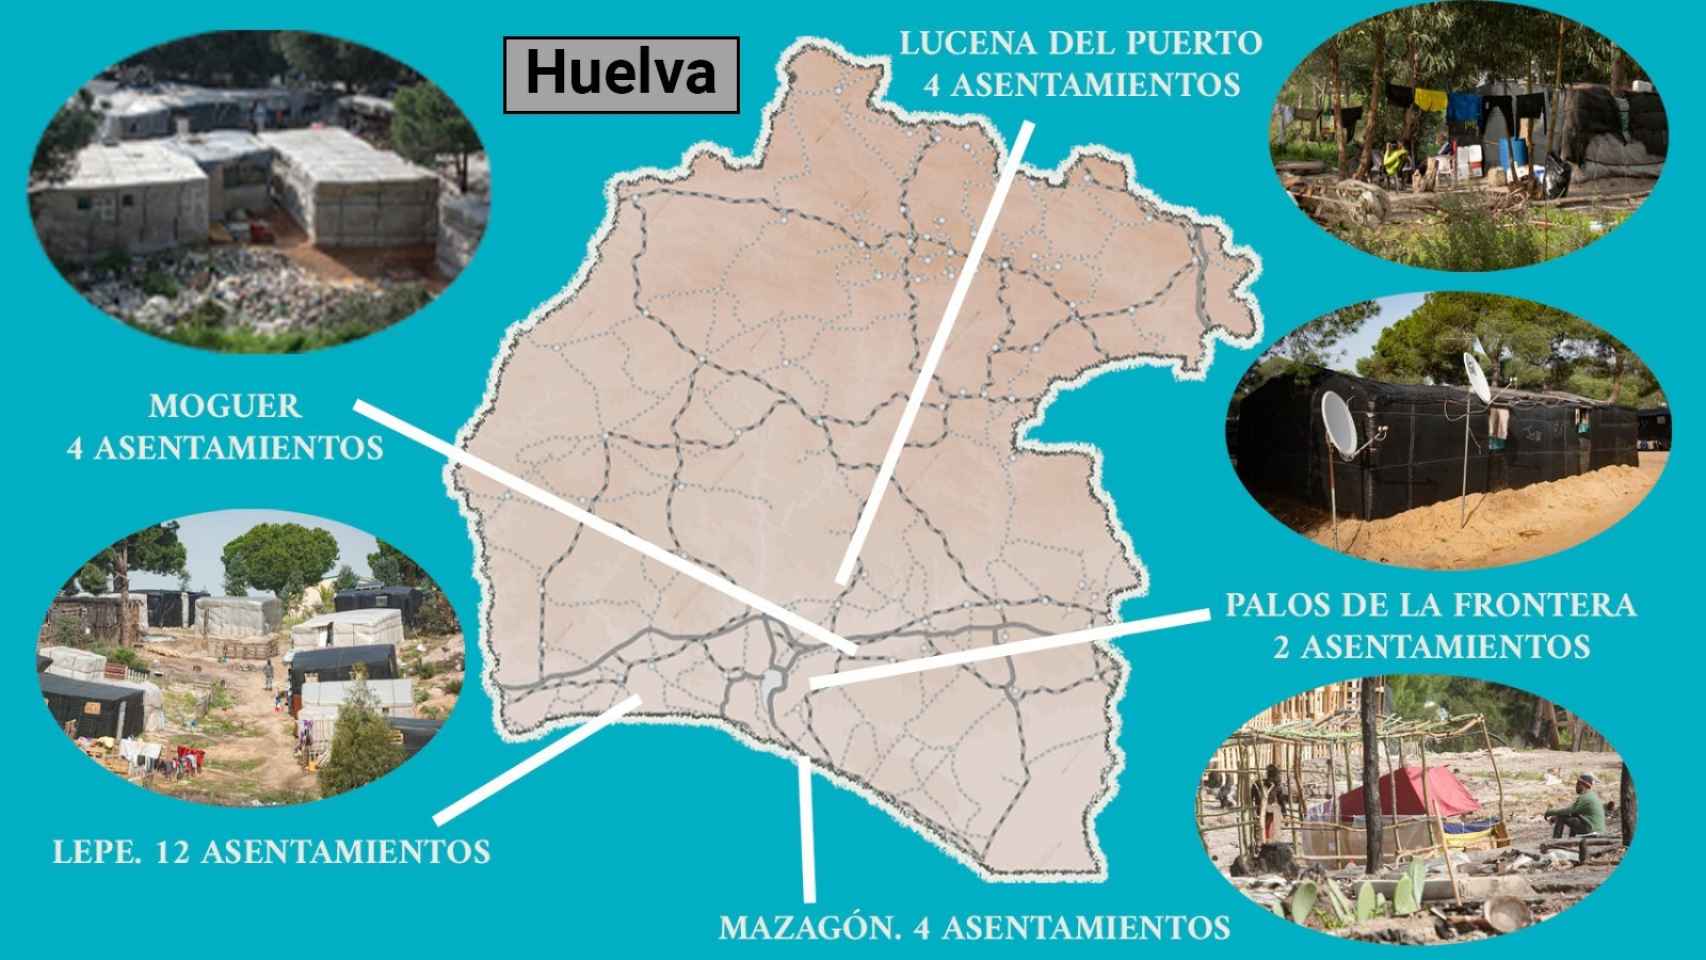 El mapa de los asentamientos en la provincia de Huelva.